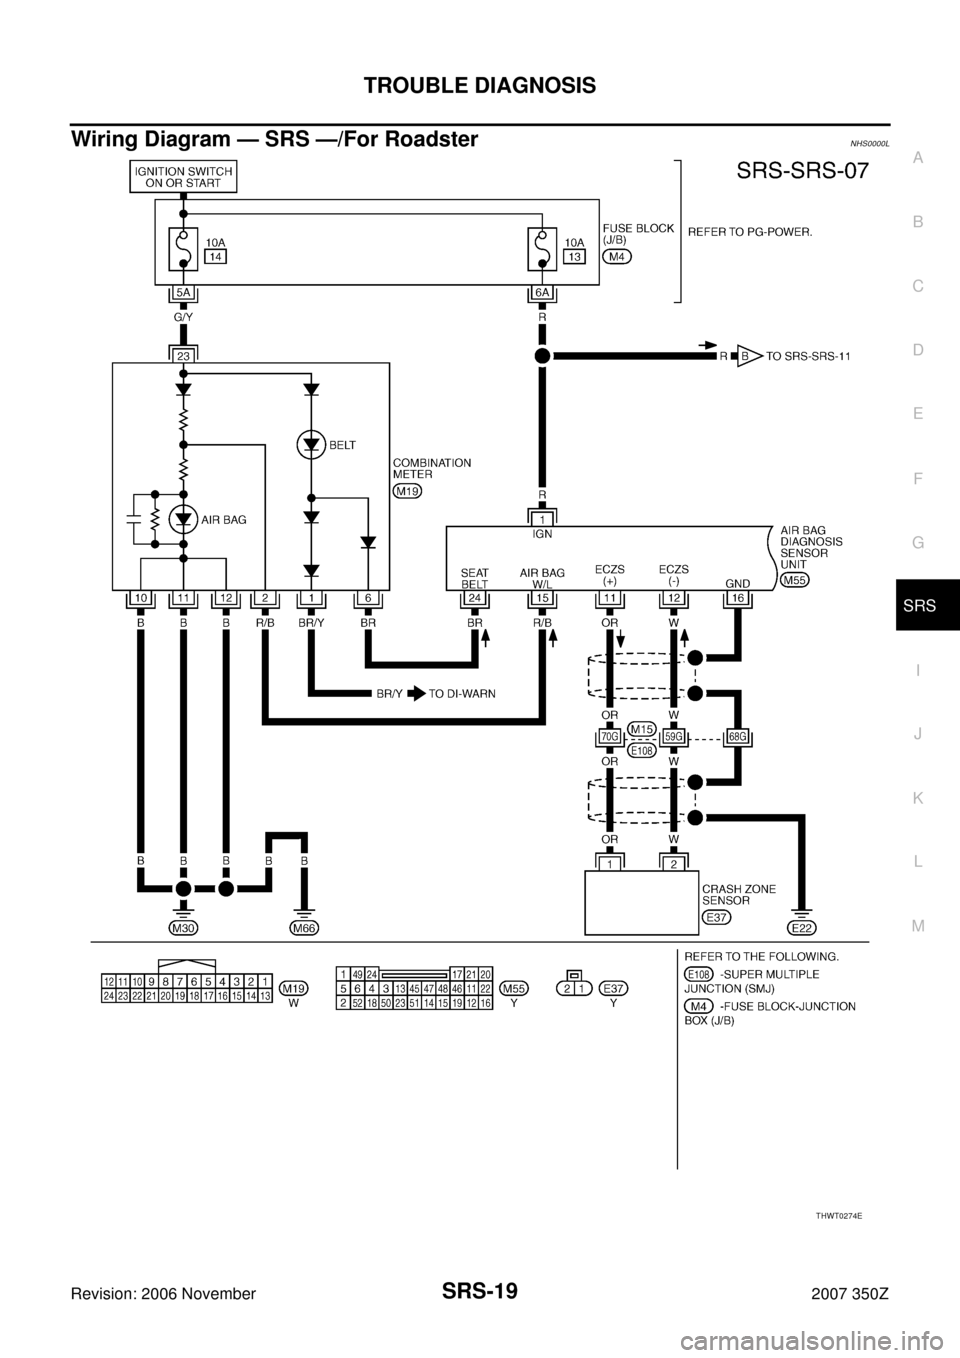 NISSAN 350Z 2007 Z33 Supplemental Restraint System Workshop Manual TROUBLE DIAGNOSIS
SRS-19
C
D
E
F
G
I
J
K
L
MA
B
SRS
Revision: 2006 November2007 350Z
Wiring Diagram — SRS —/For RoadsterNHS0000L
THWT0274E 